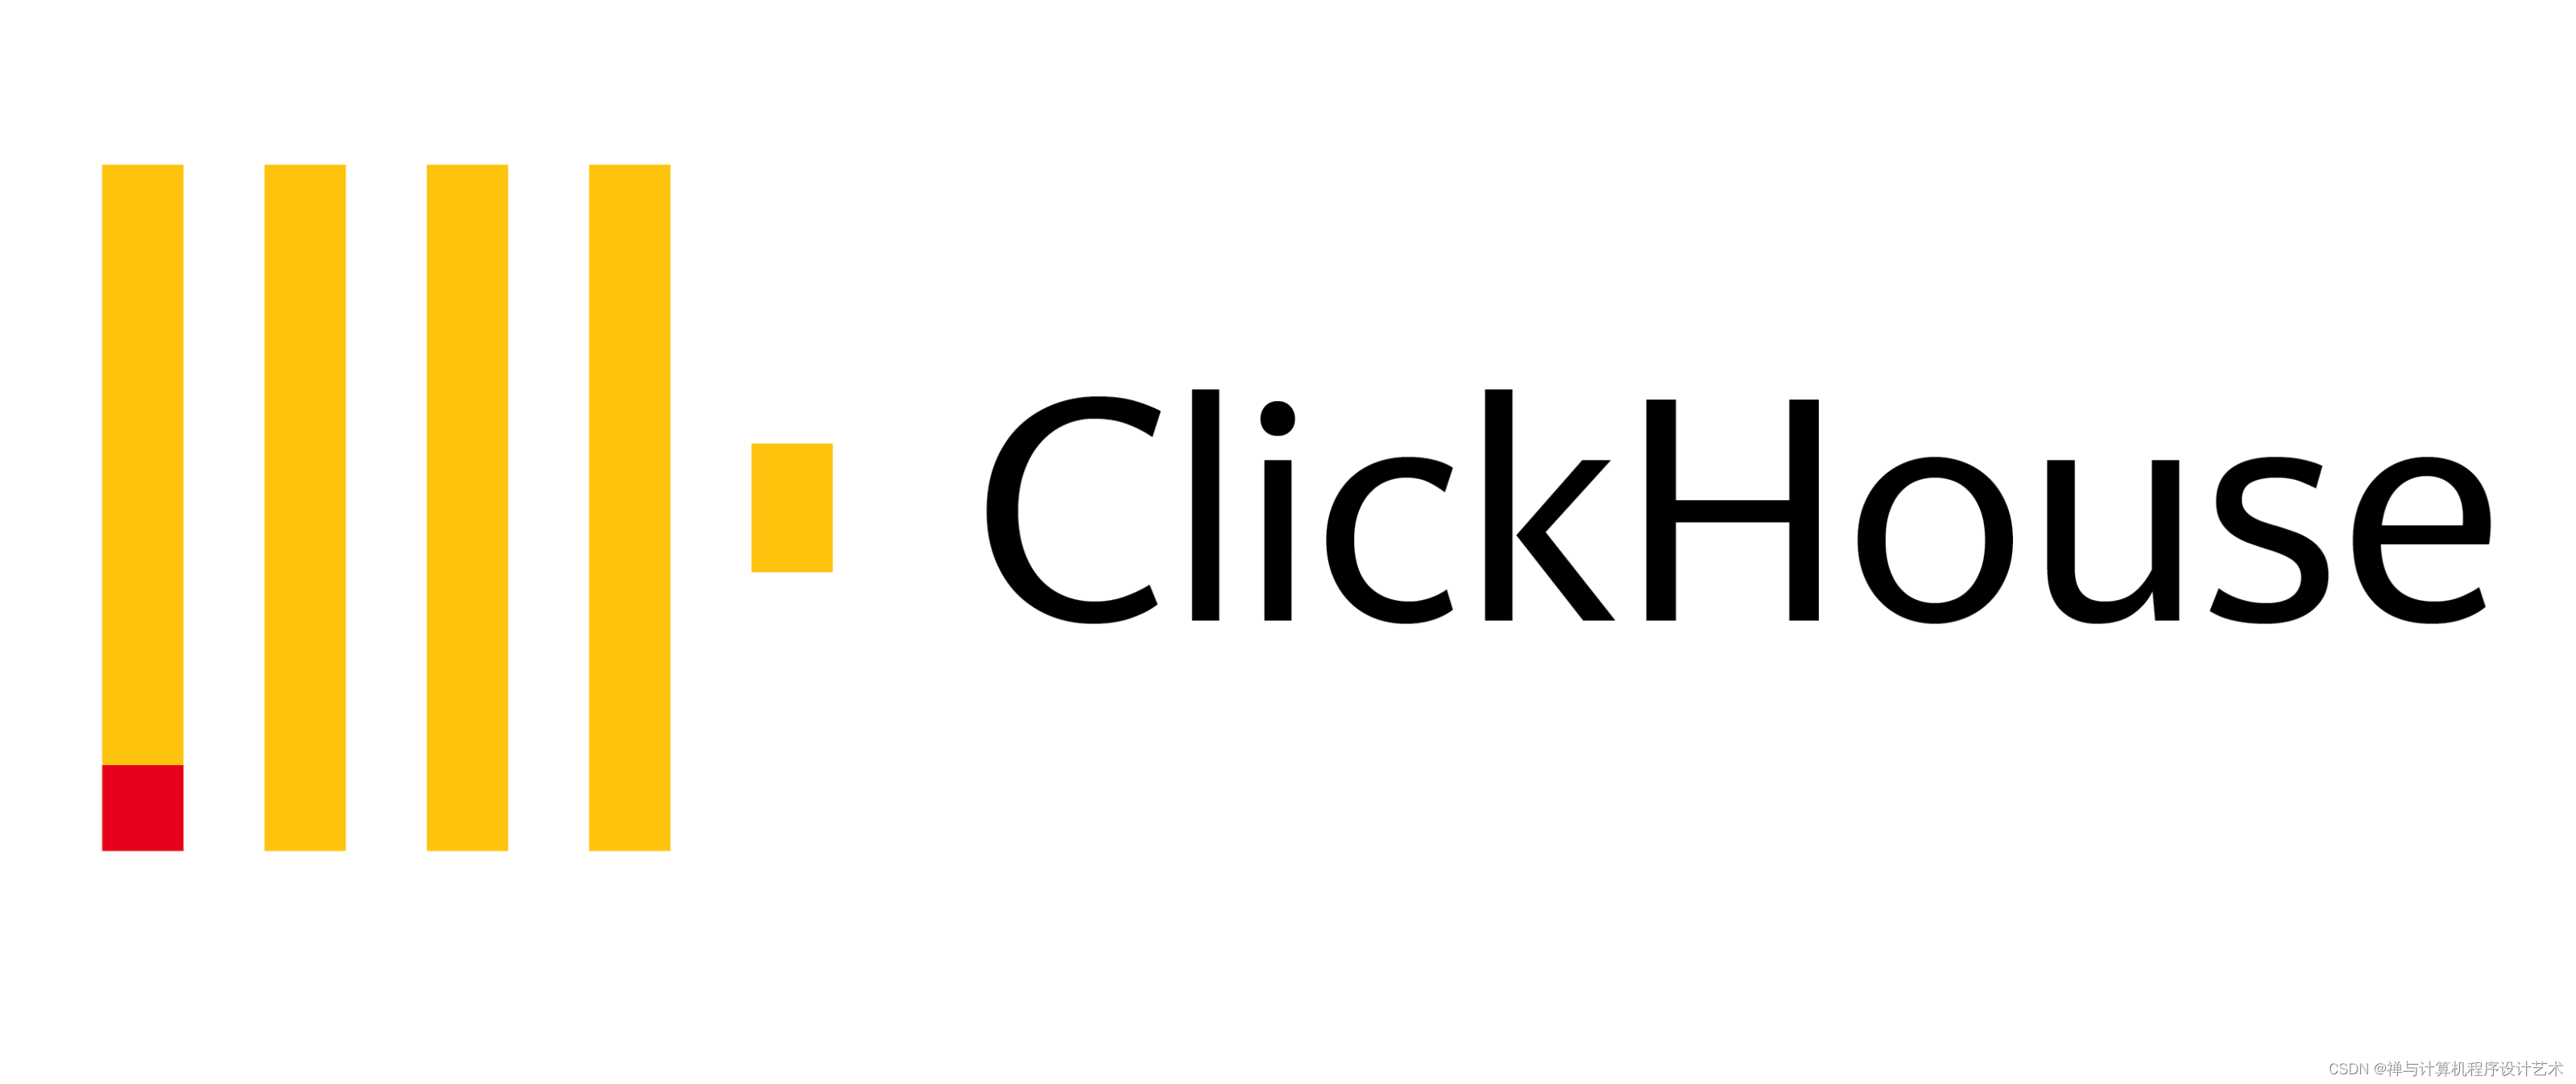 【精华收藏】ClickHouse 系统架构、存储引擎、 查询引擎原理分析